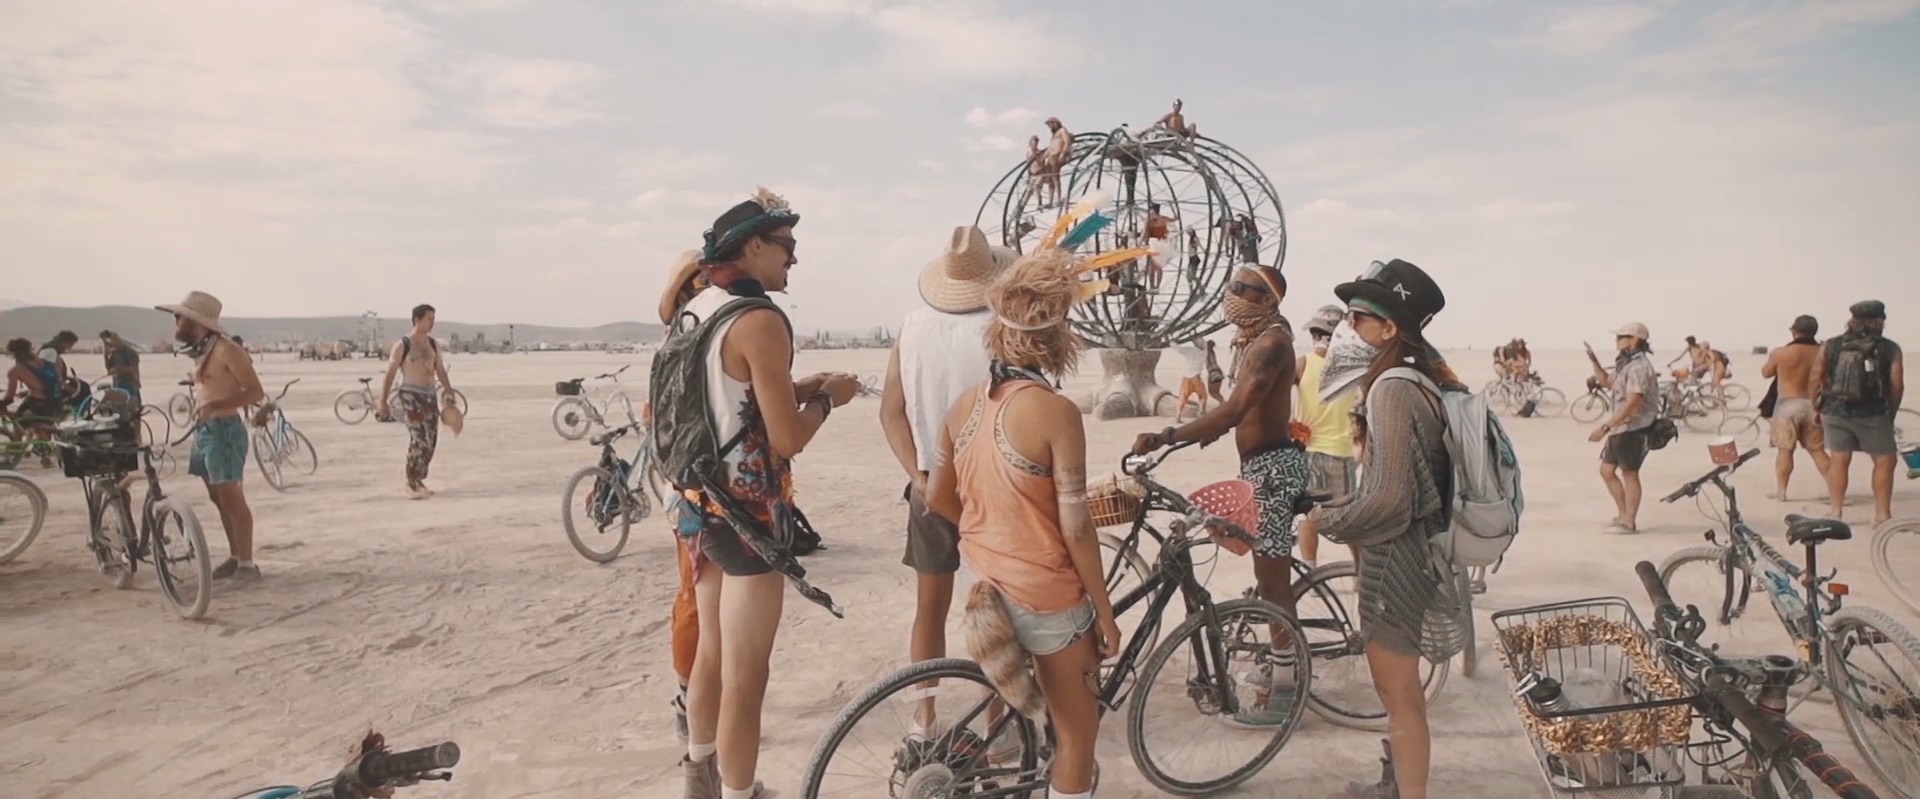 Art of Burning Man 2014_13